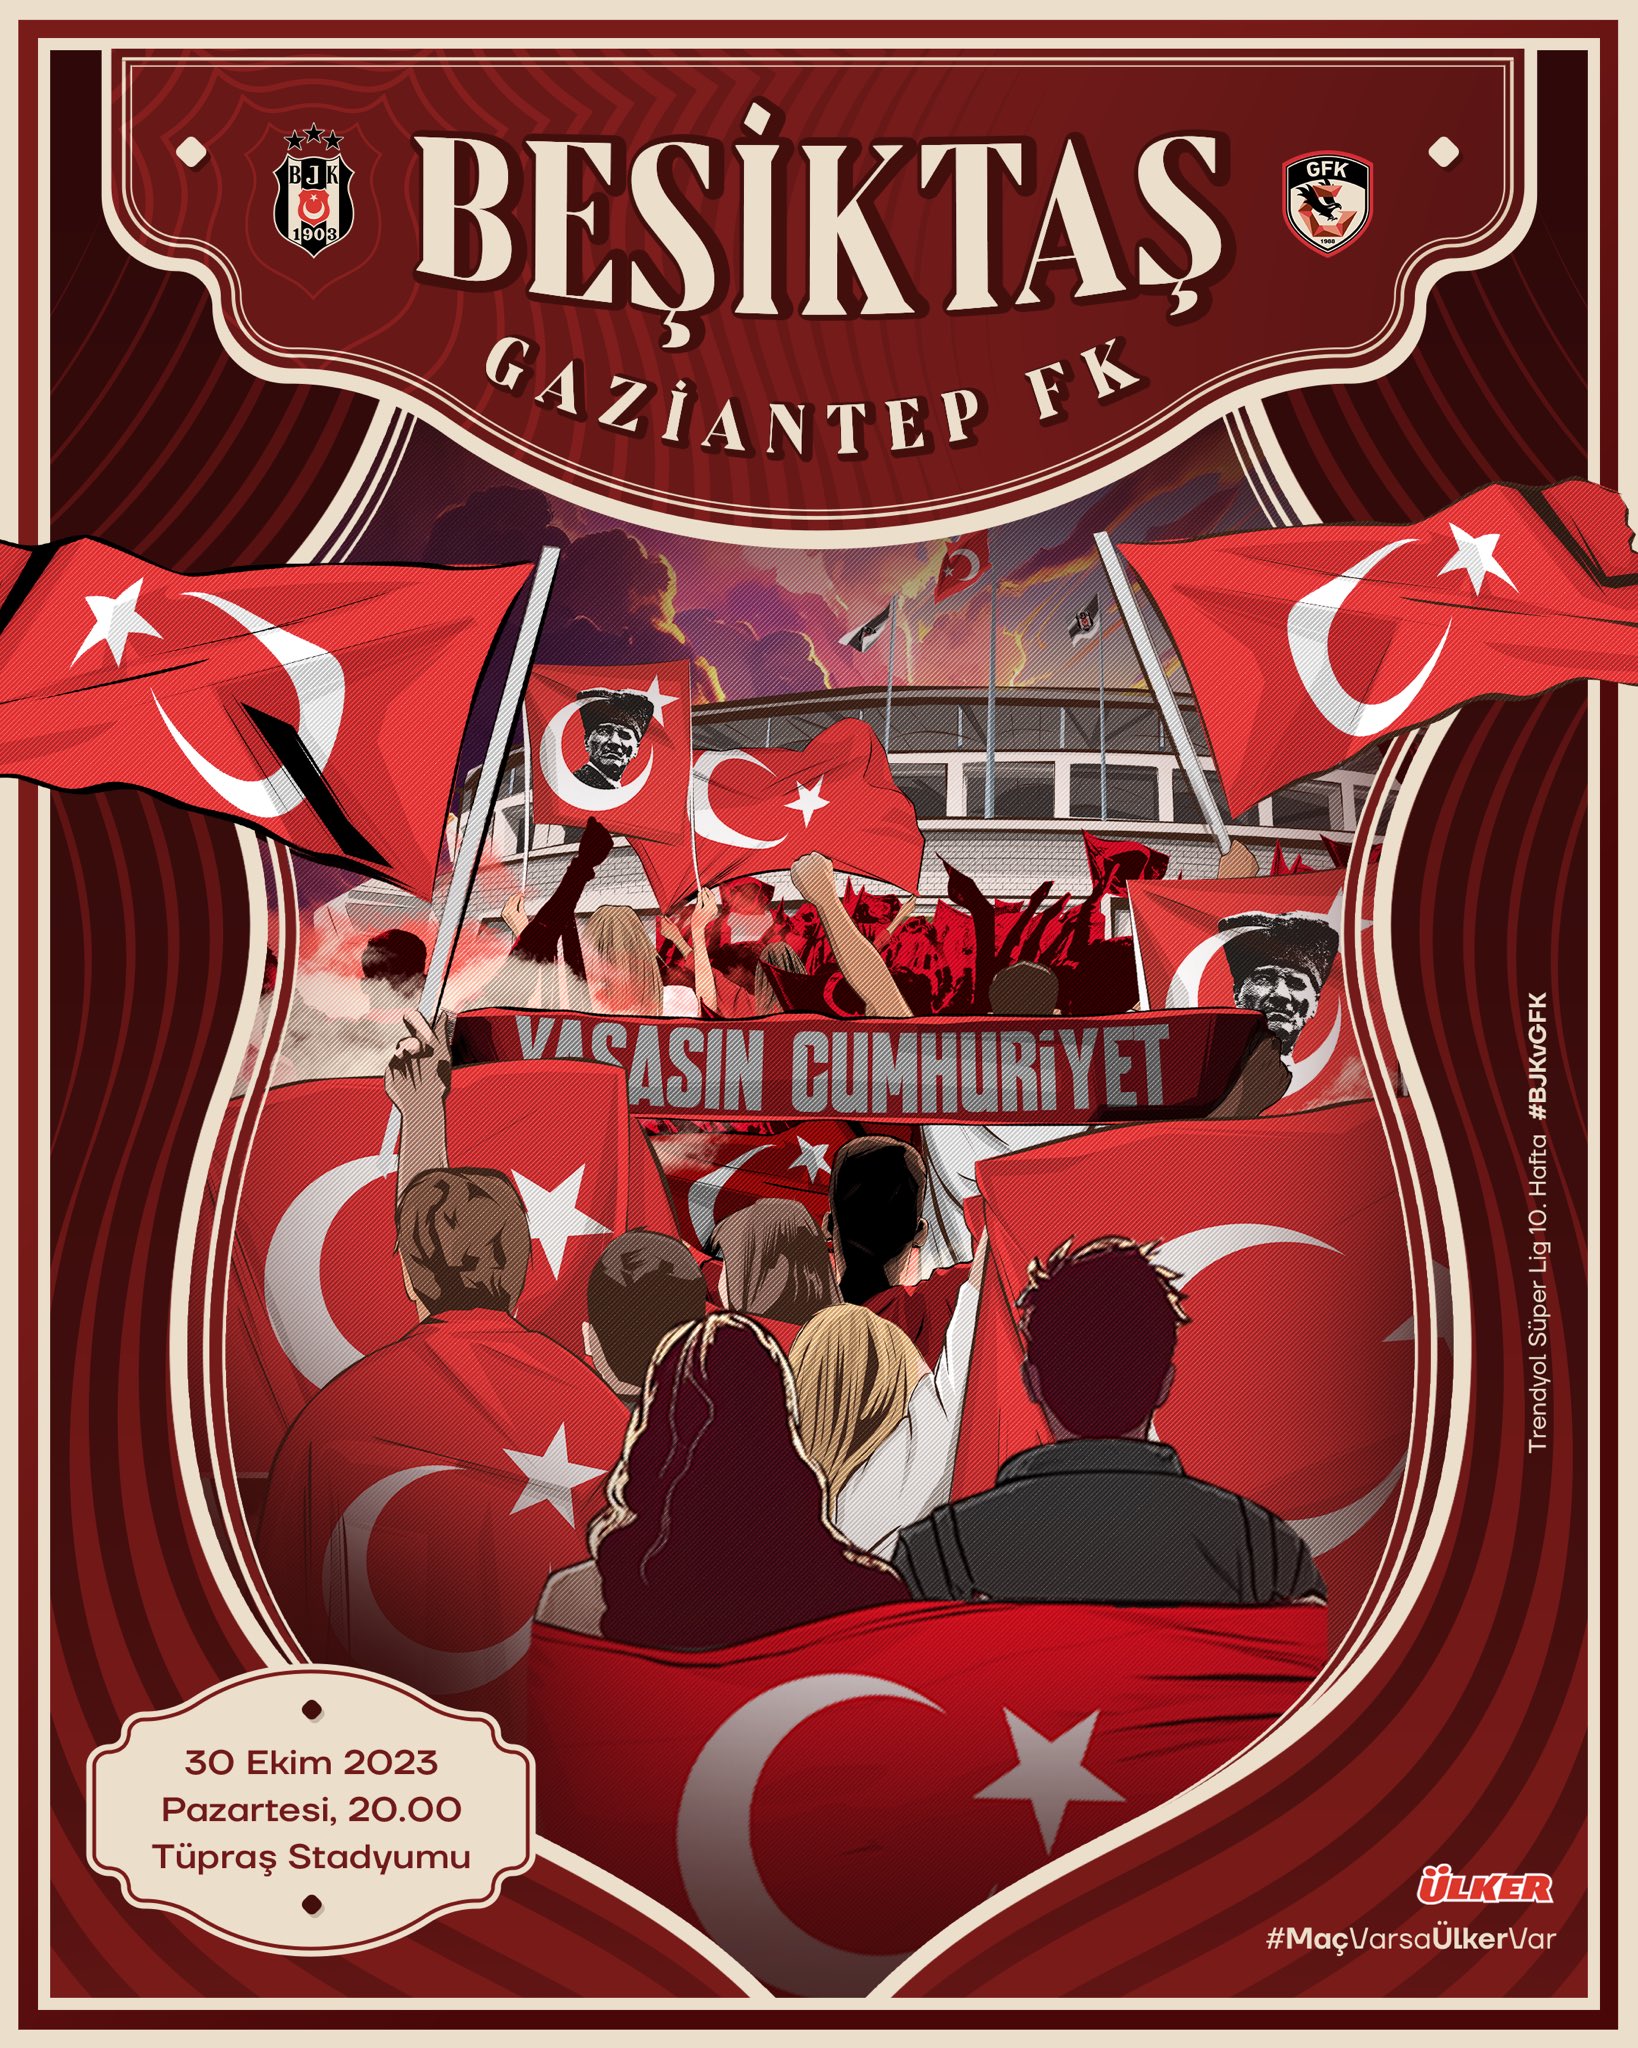 Beşiktaş Gaziantep FK Maç Afişi